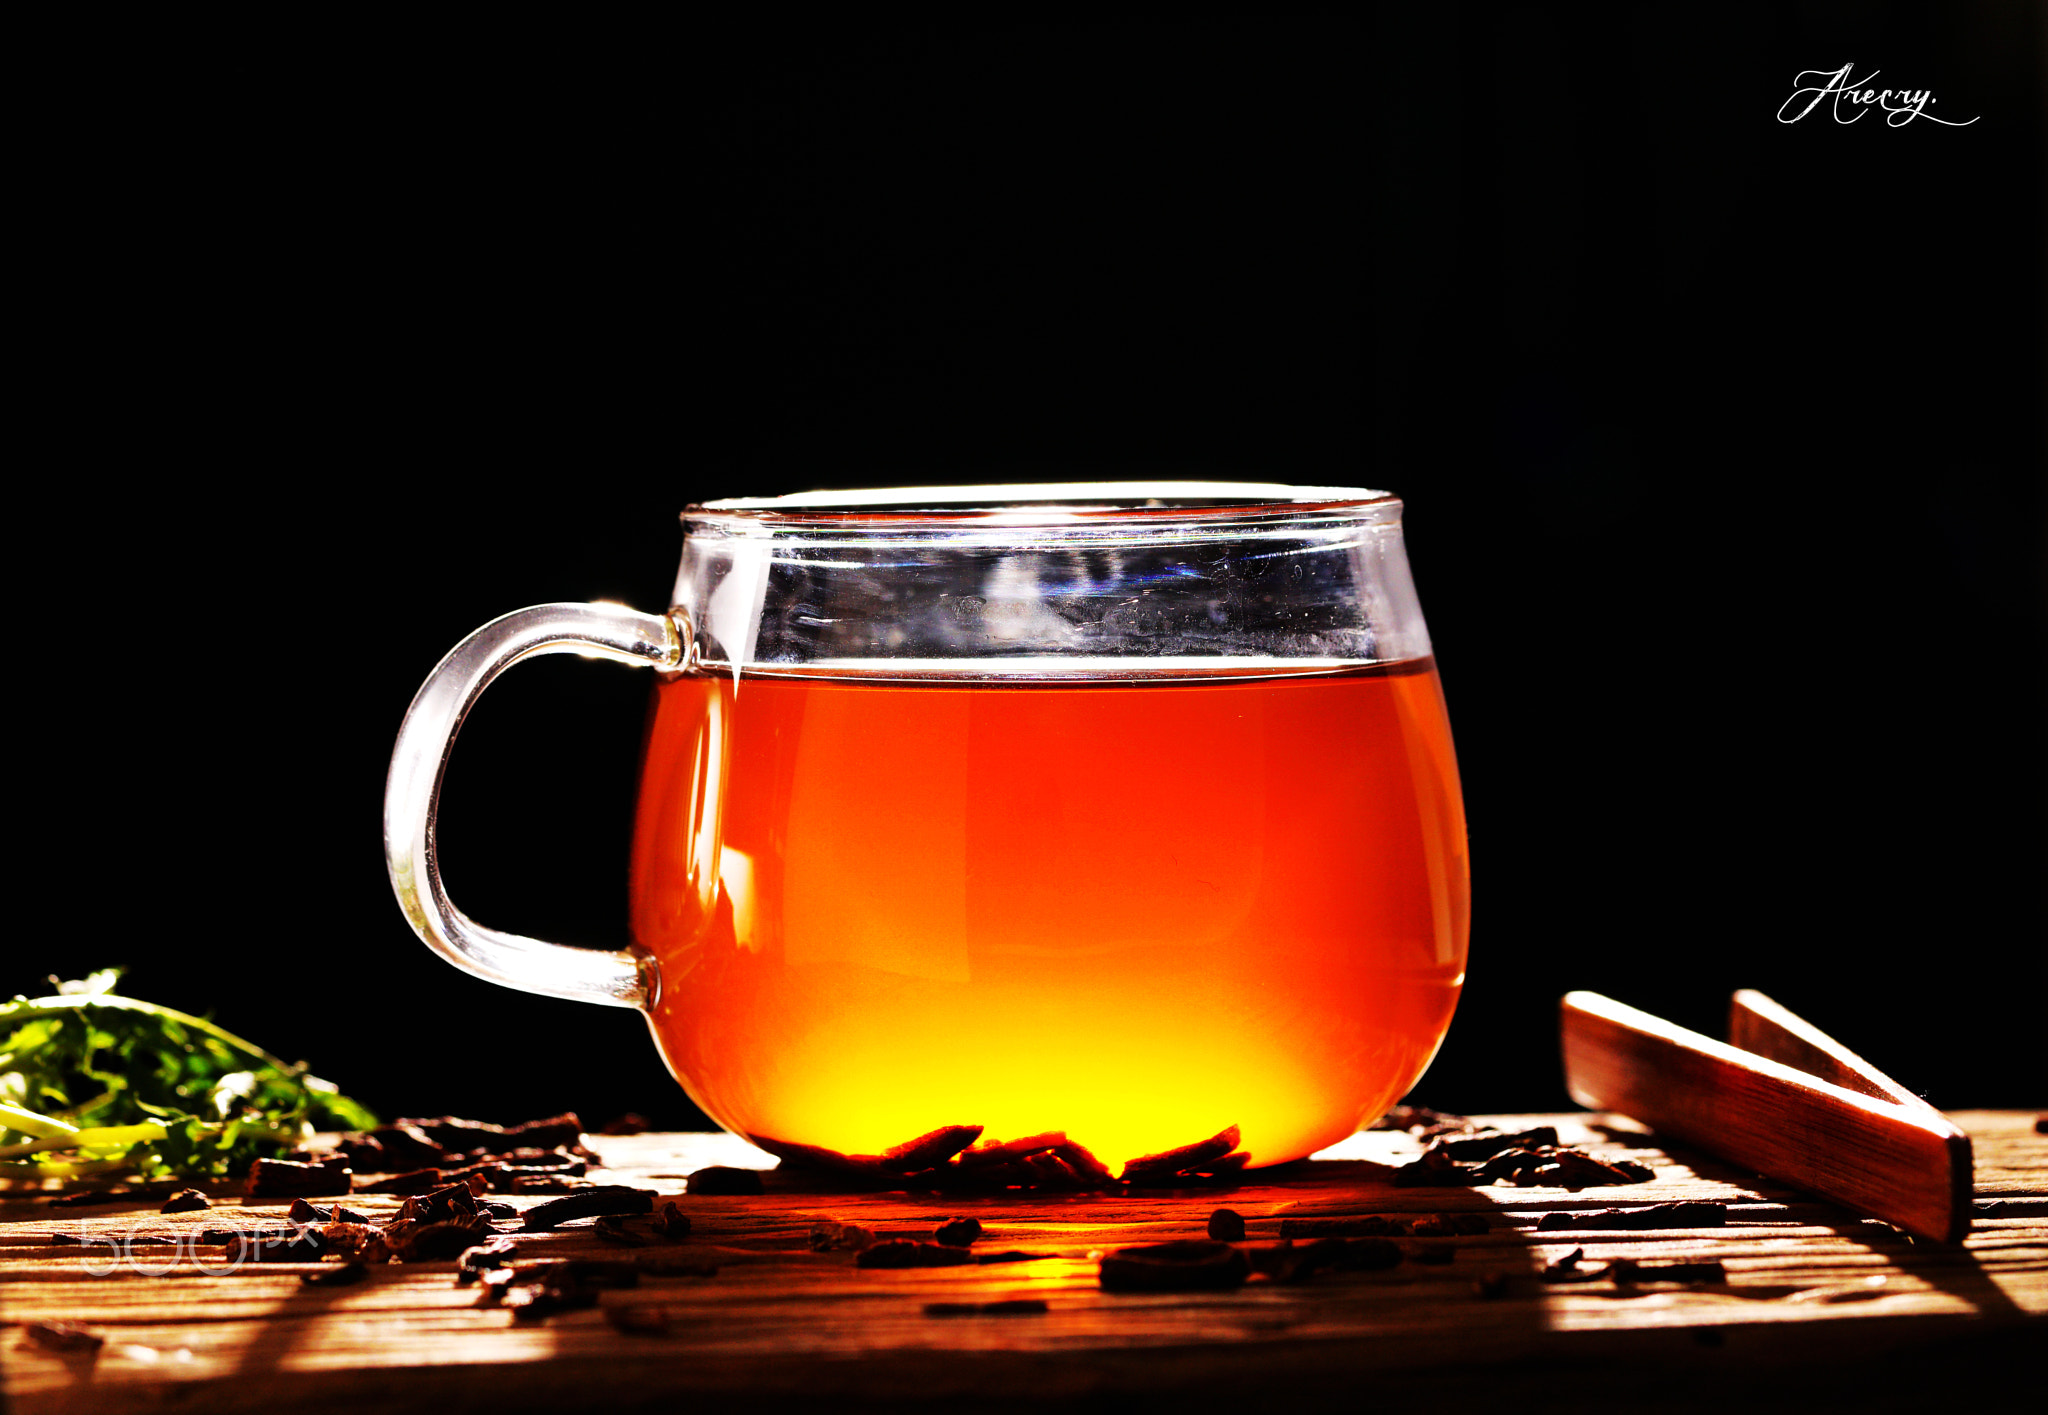 Dandelion root Tea